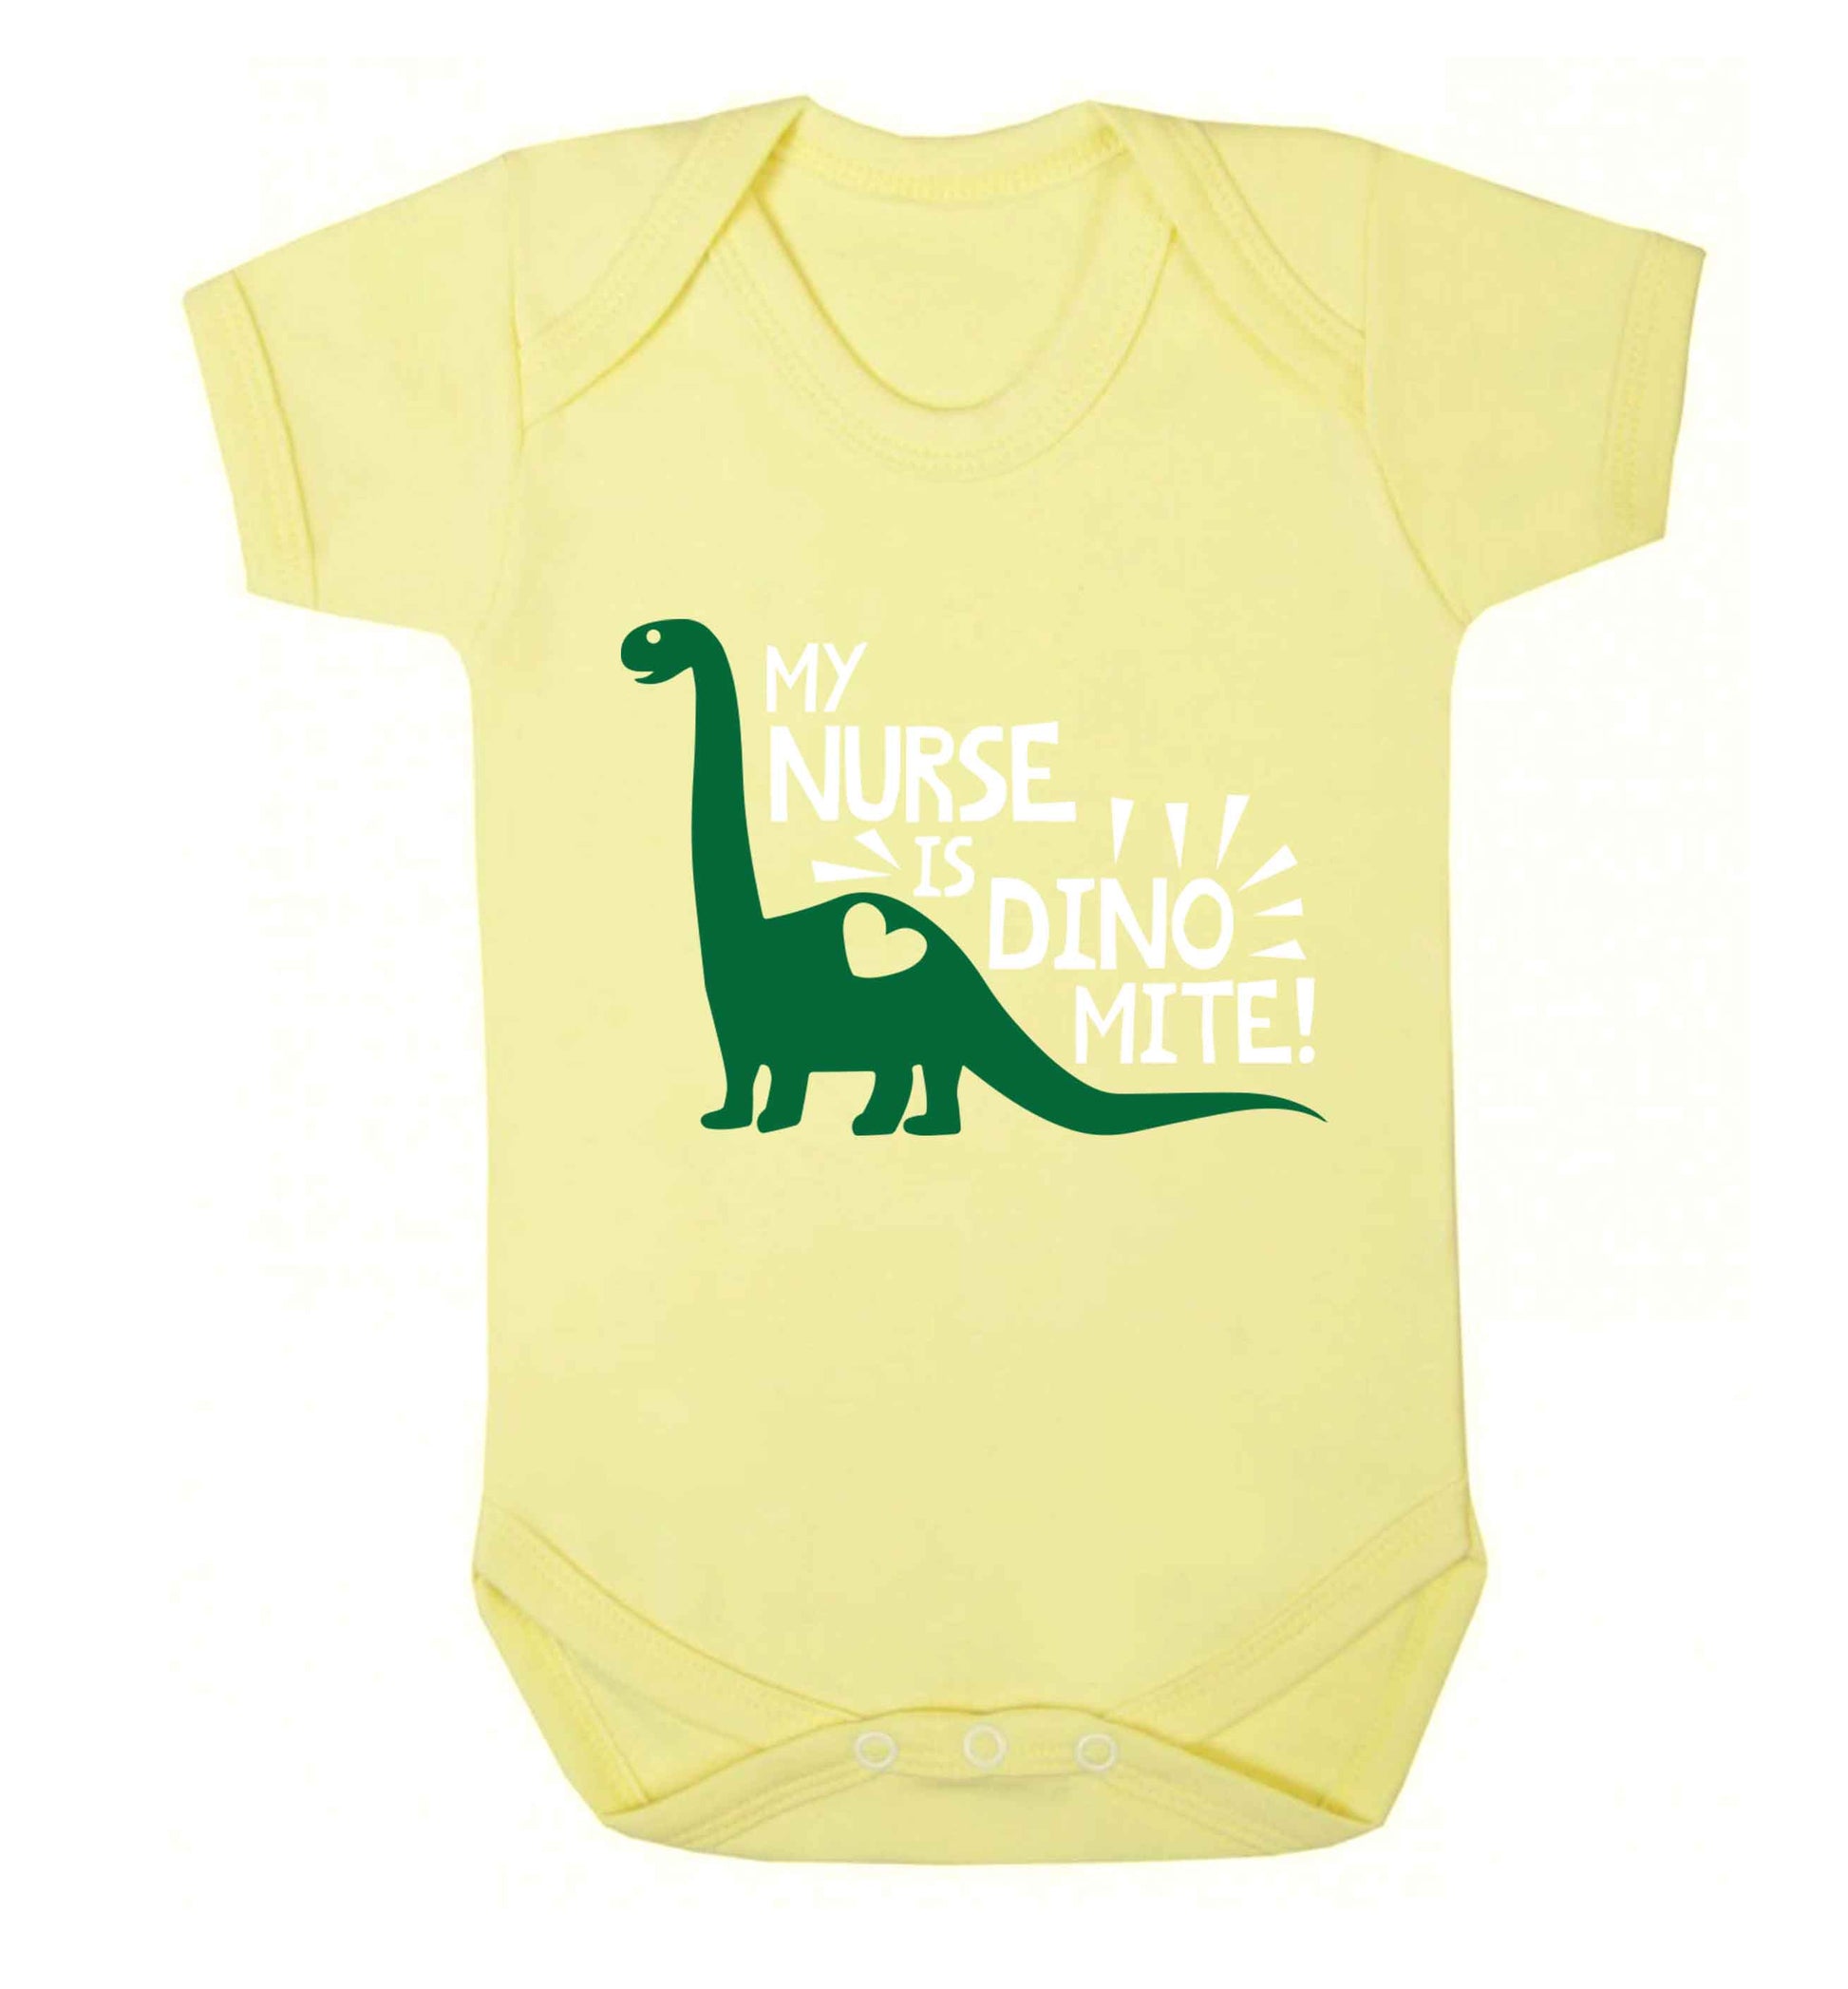 My nurse is dinomite! Baby Vest pale yellow 18-24 months